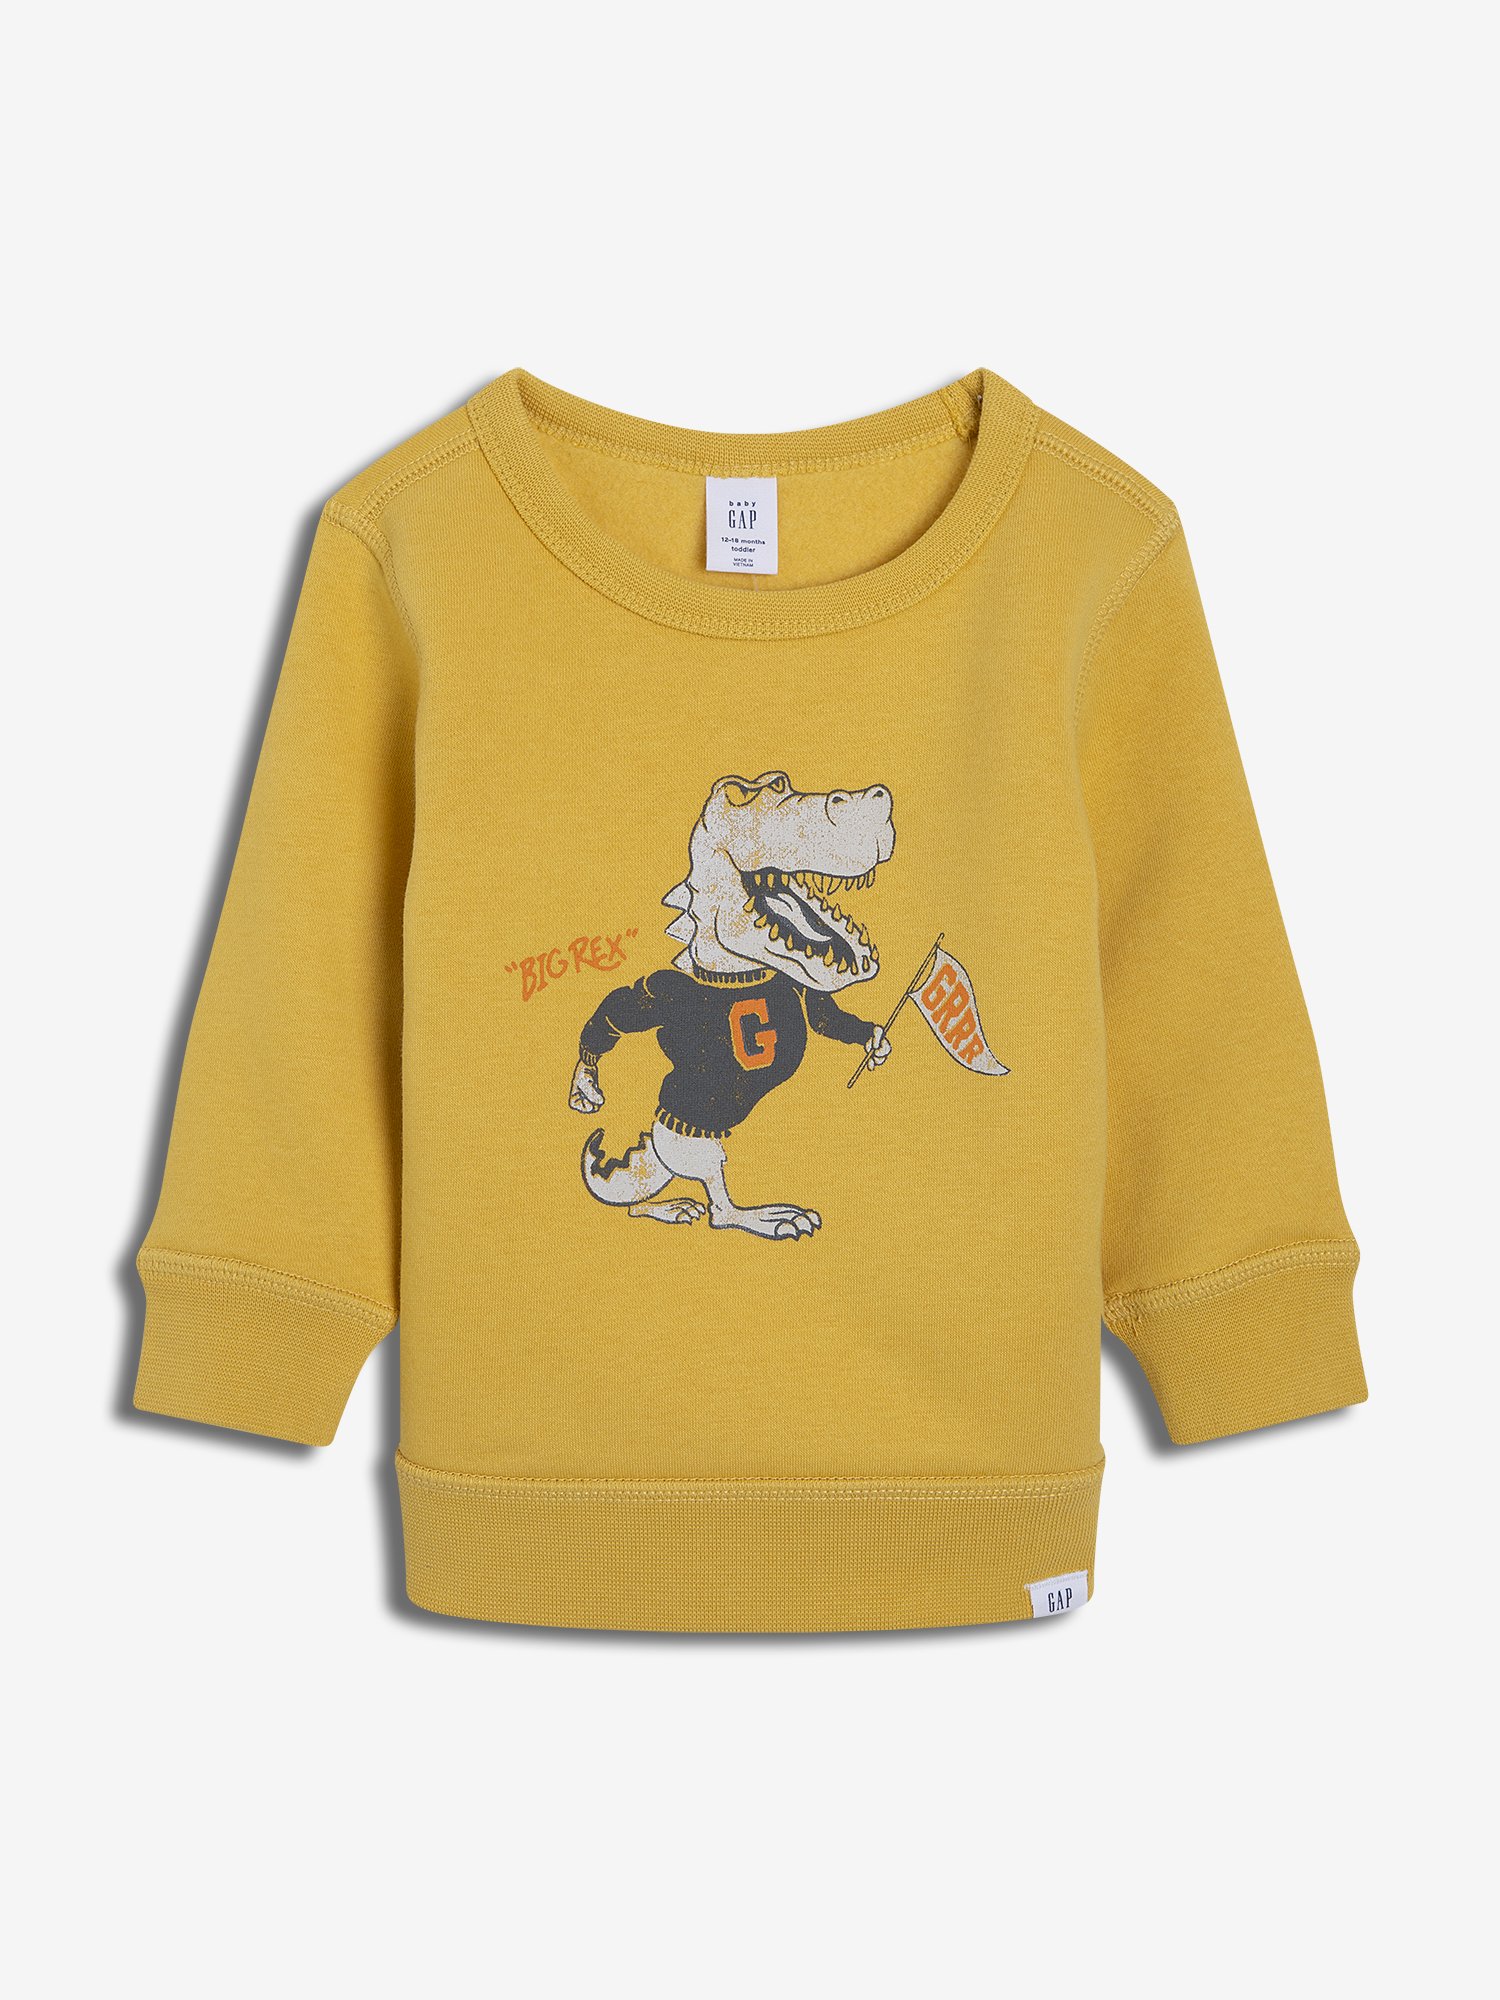 Erkek Bebek Baskılı Sweatshirt product image